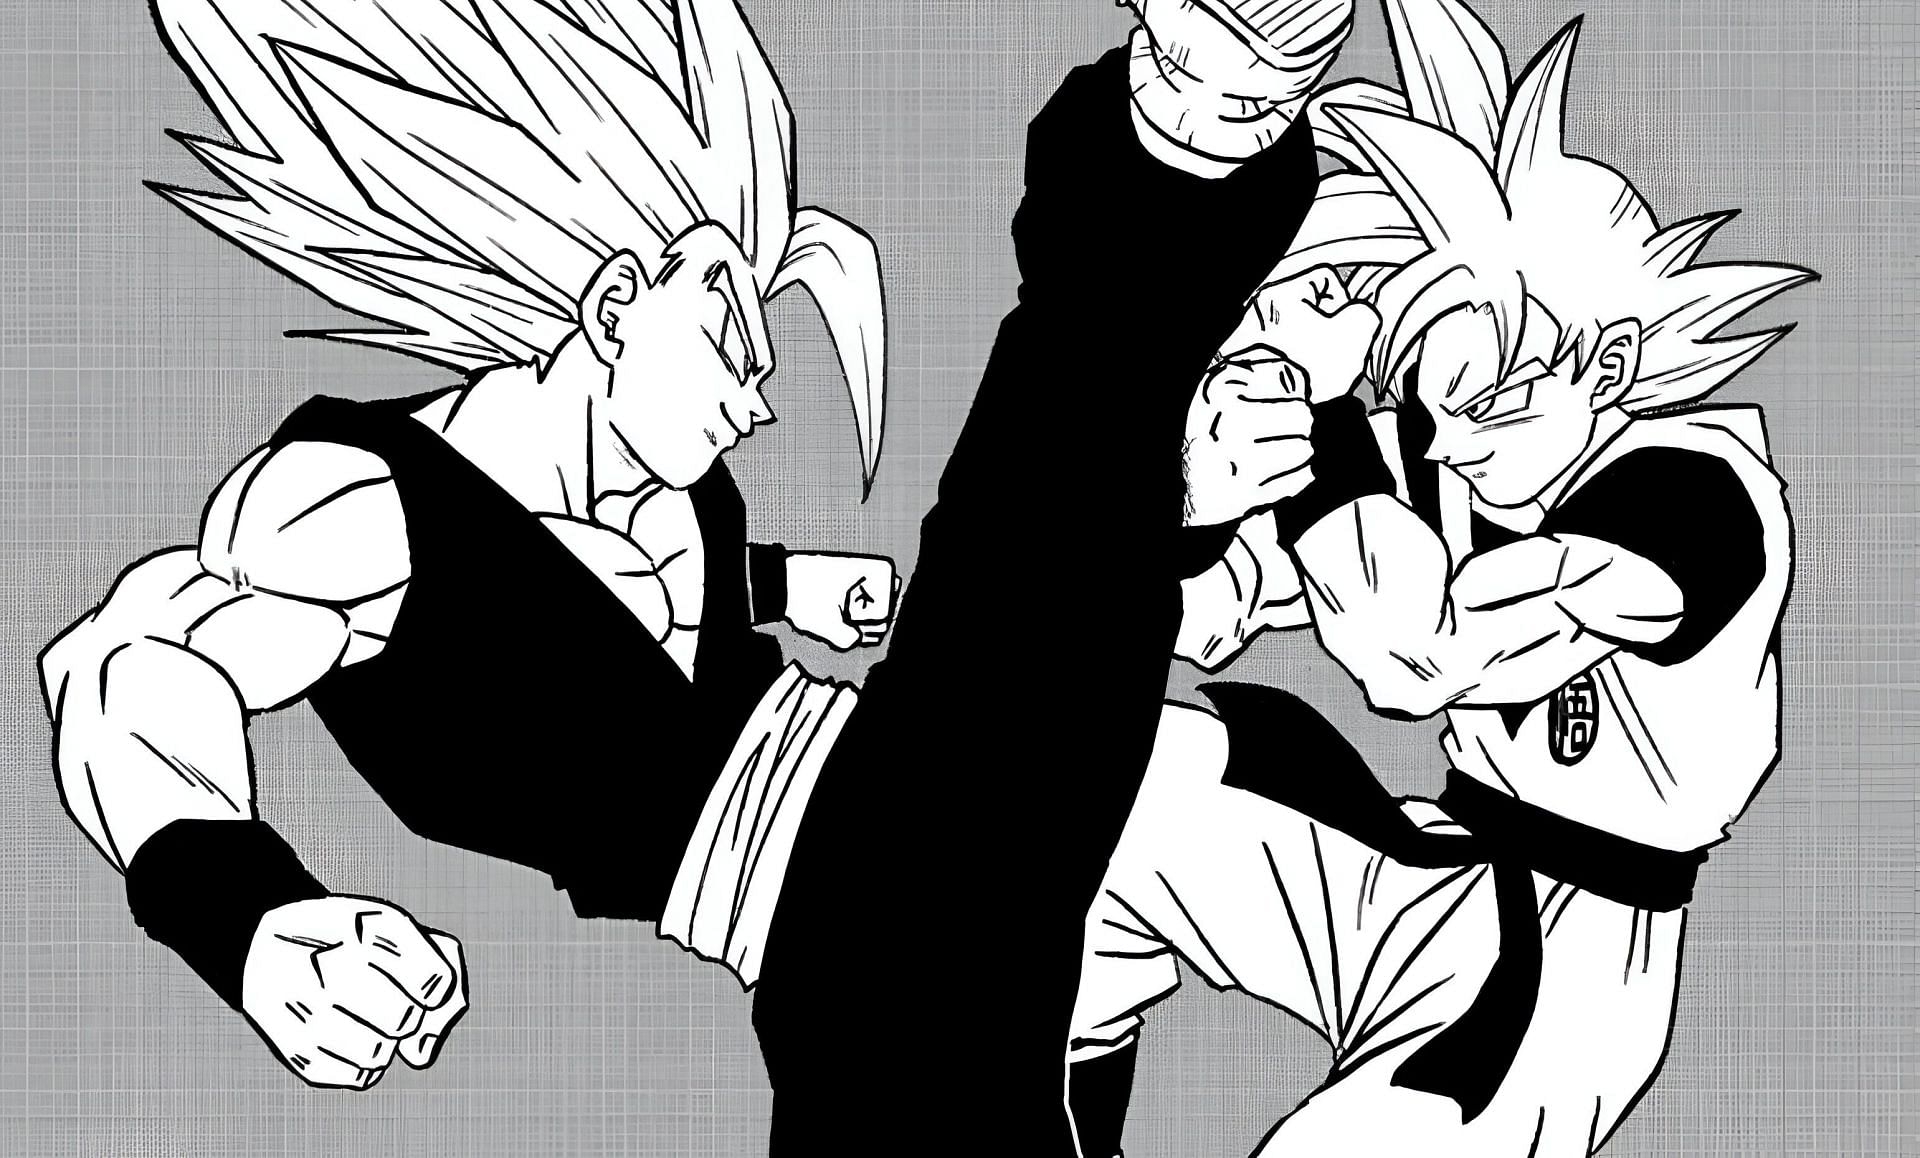 Gohan and Goku as seen in Dragon Ball Super manga (Image via Shueisha)